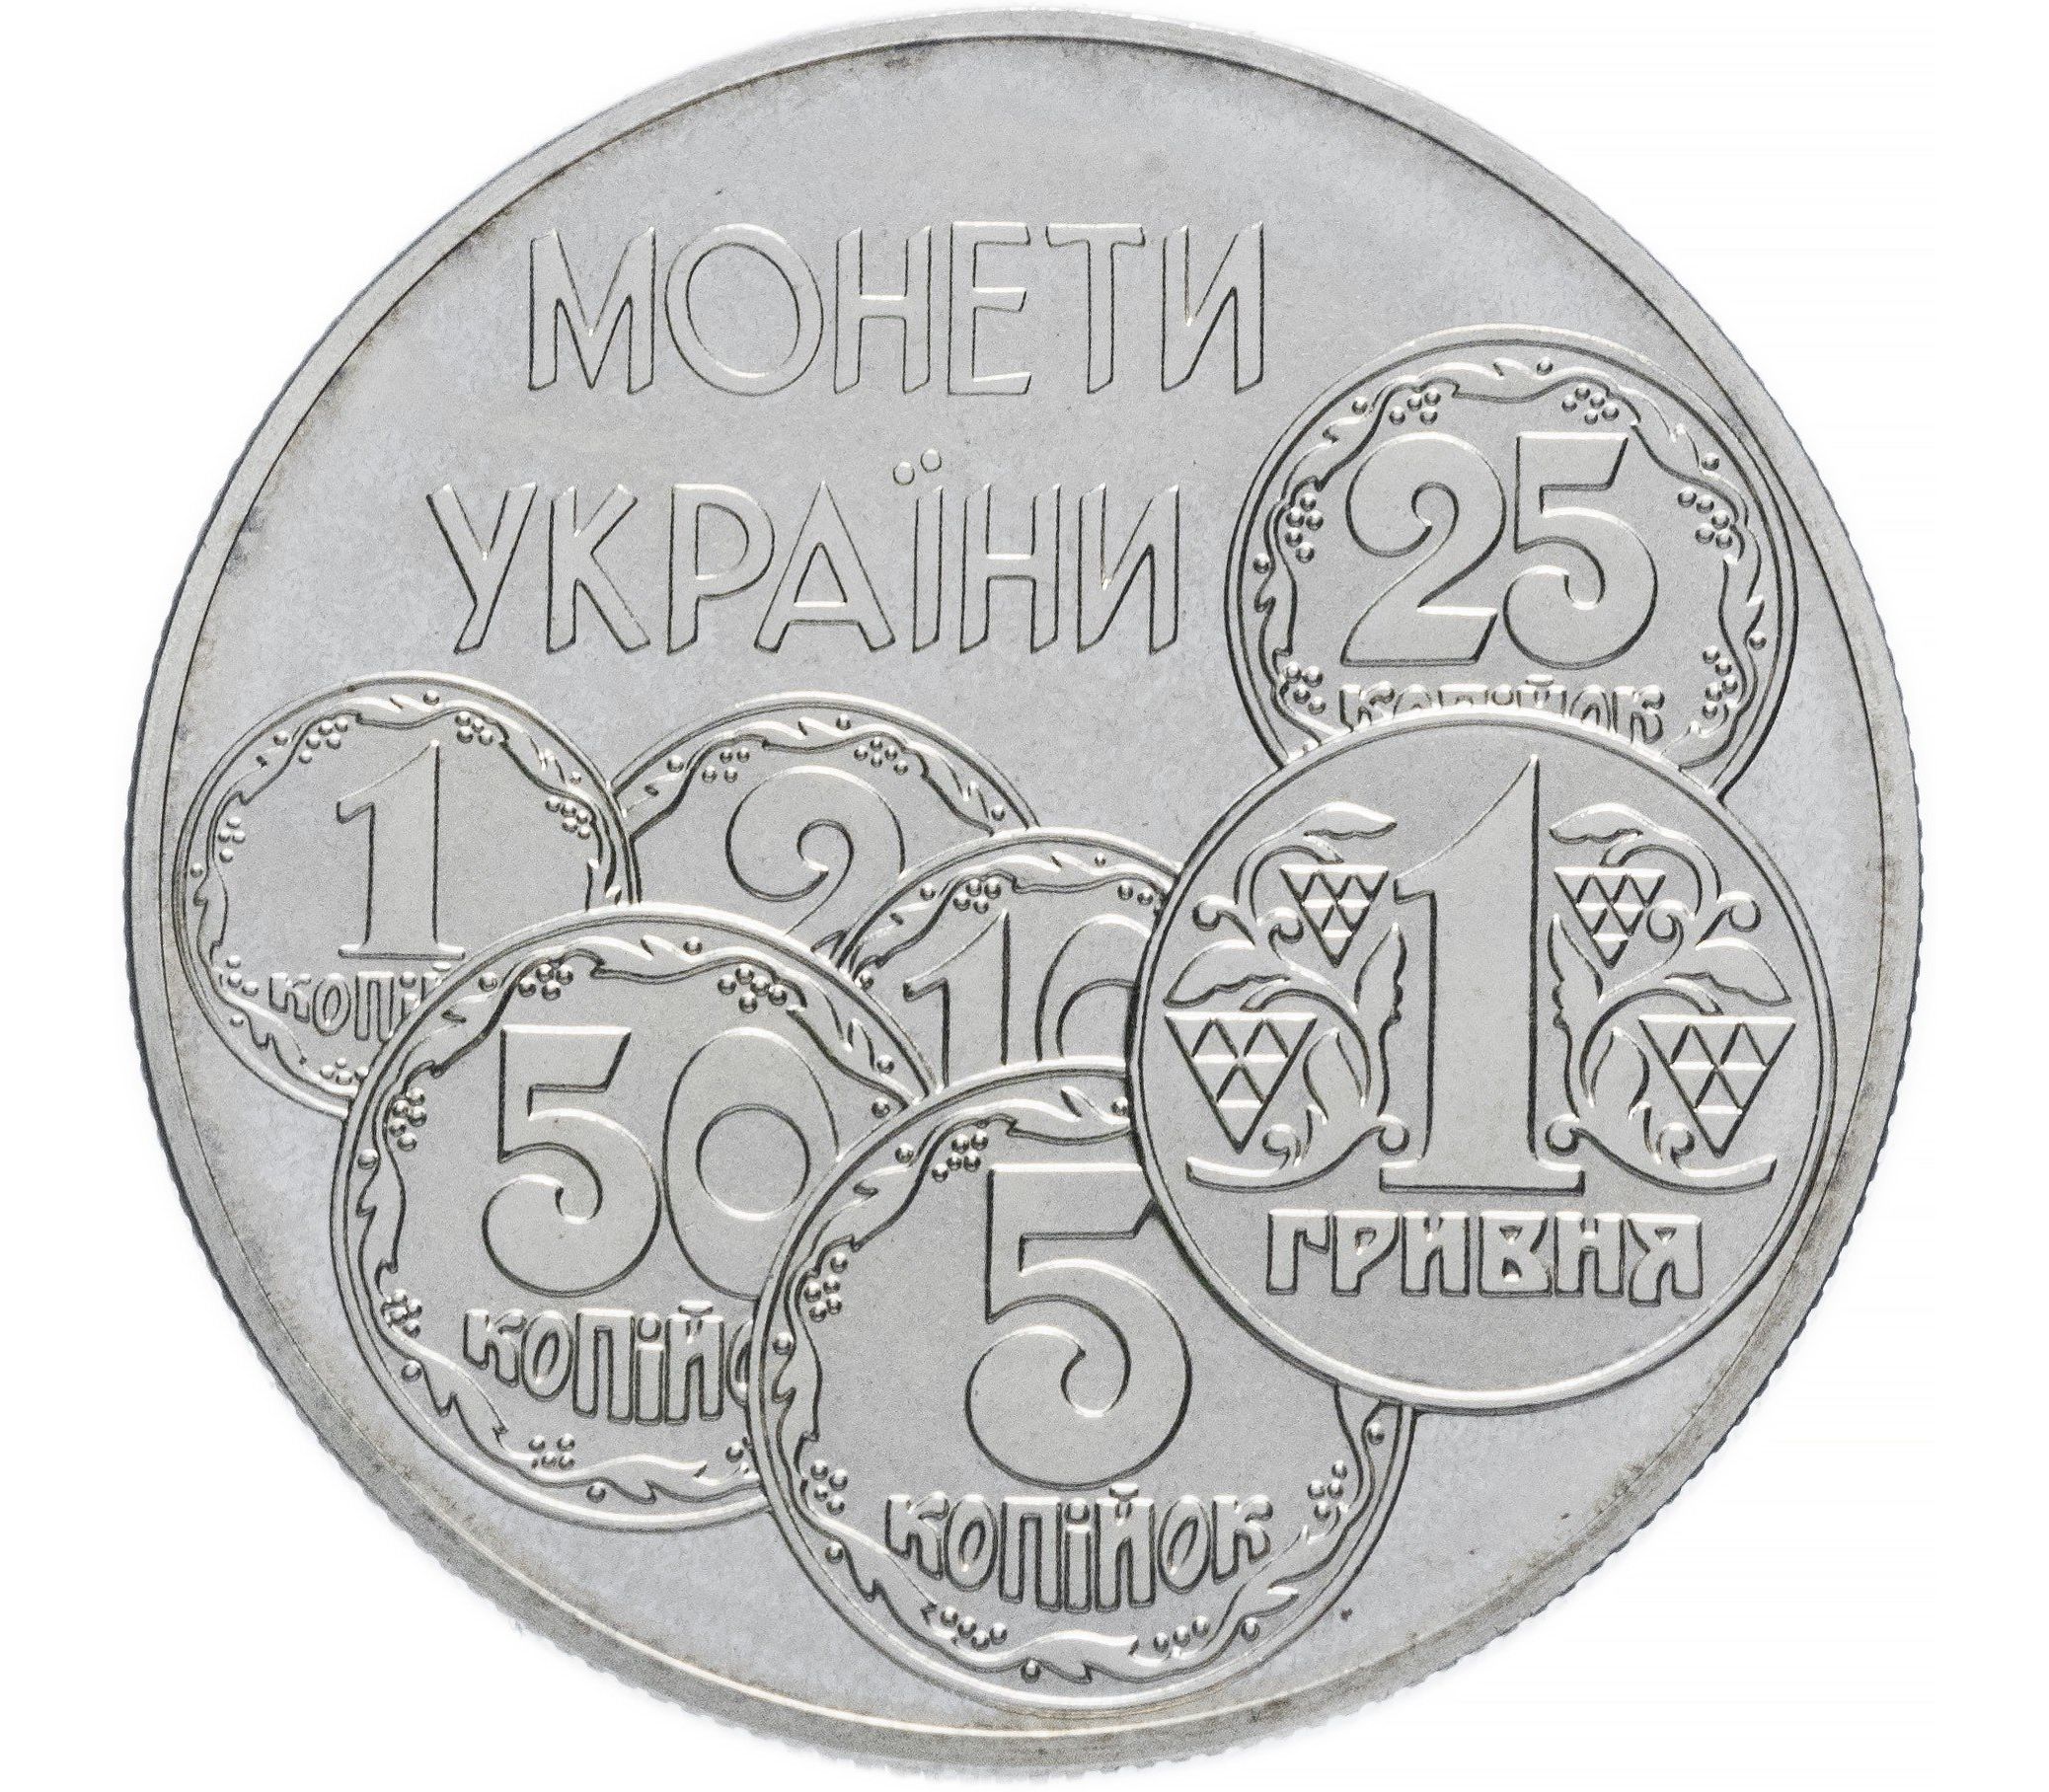 Купить монеты украины. Украина 2 гривны, 1996 монеты Украины. 2 Гривны 1996 монеты Украины. Монета 2 гривны монеты Украины. Две гривны 1996г монеты Украины.